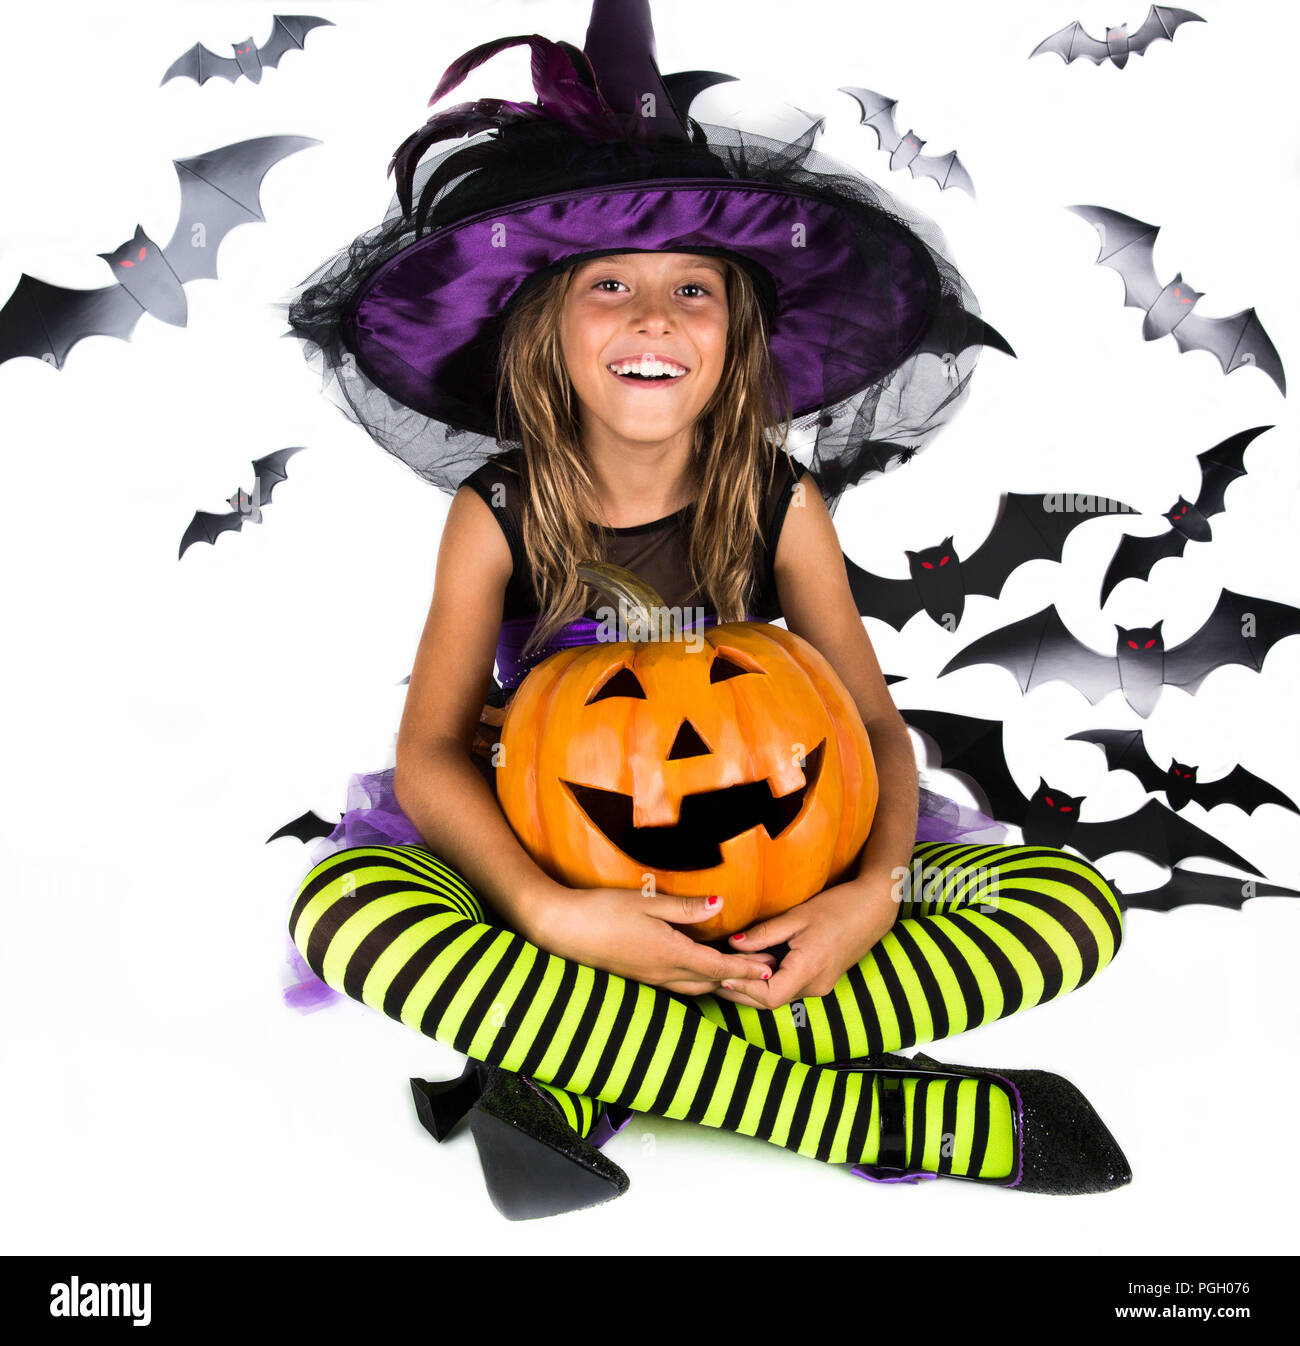 Happy halloween strega & felice di zucca. Bambina con un costume di halloween di una strega con cappello, striped gambe tenendo due smiley zucche di Halloween Foto Stock